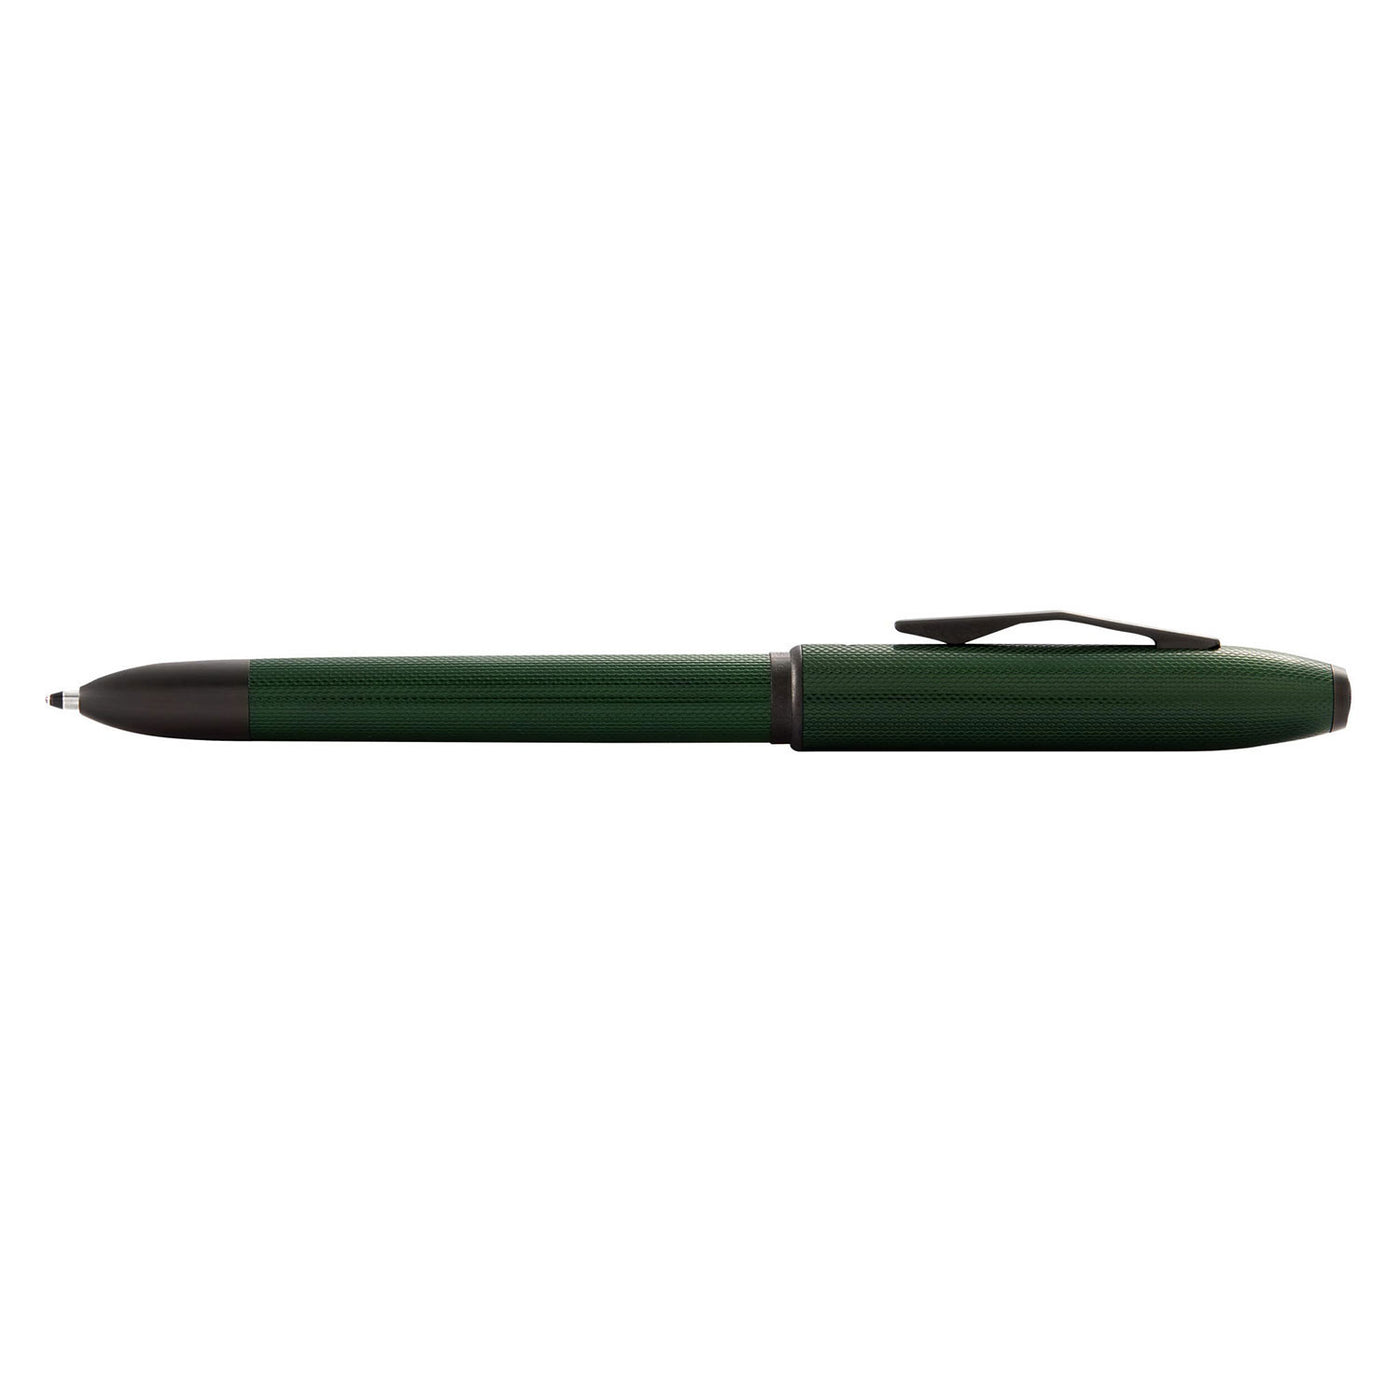 Cross Tech4 Multifunction Ball Pen - Textured Green PVD 5